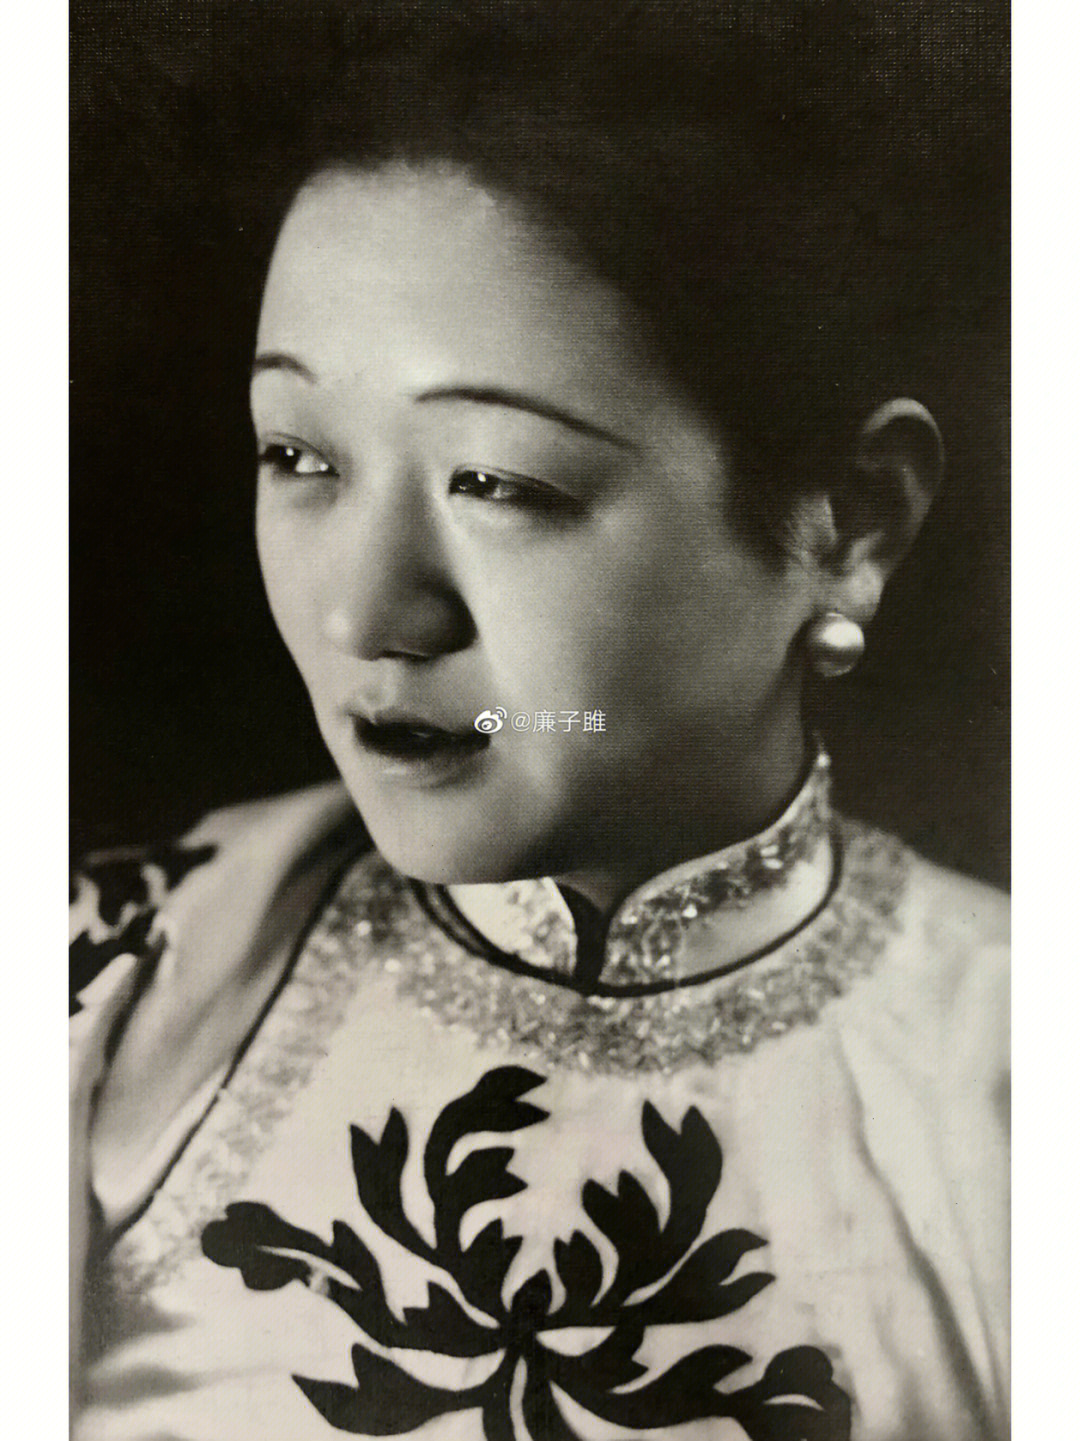 1926年,张织云当选中国影史上的第一位影后如今再看她的照片(图1)或许